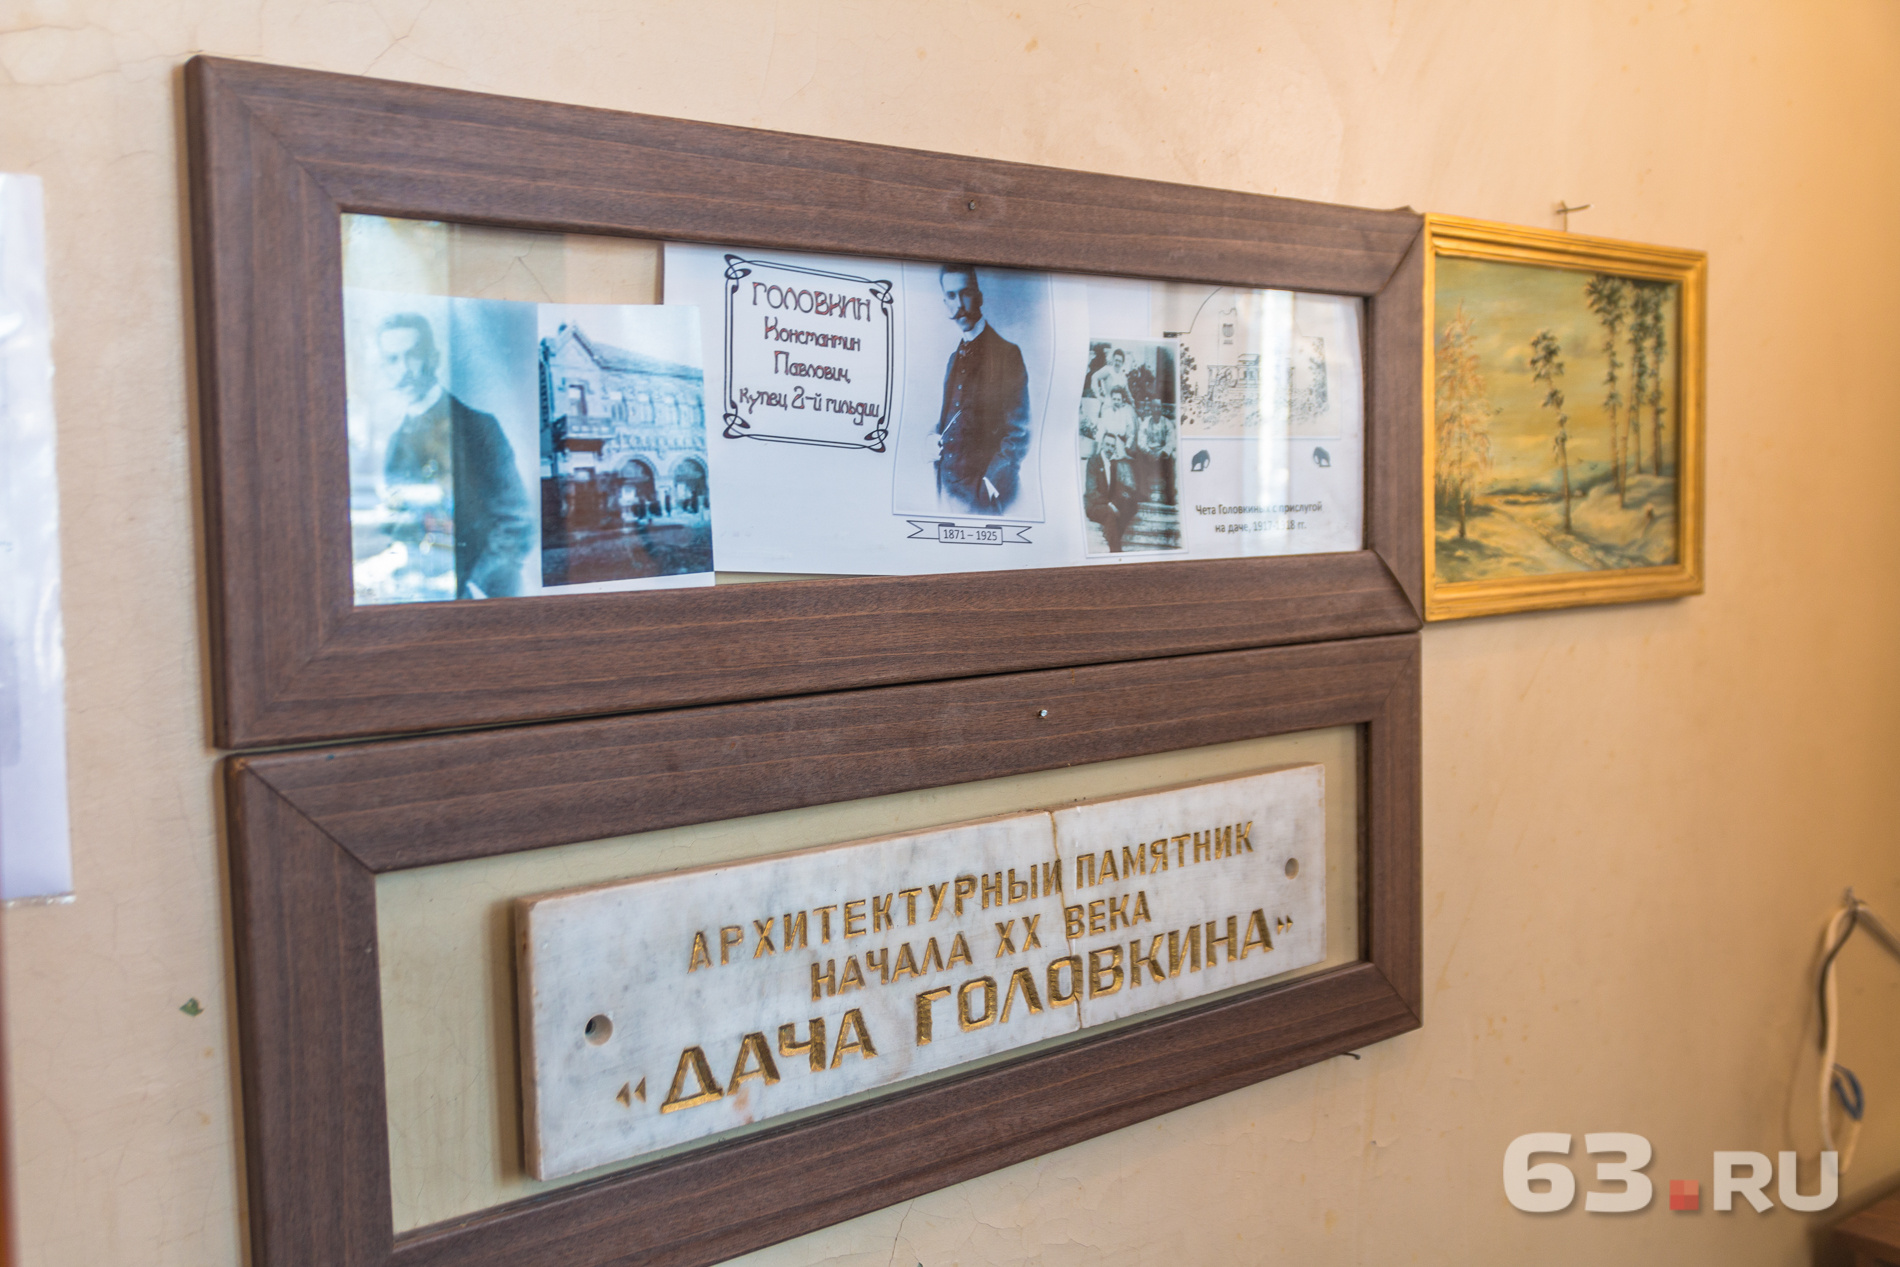 История семьи Головкиных - основная тема будущих экспозиций